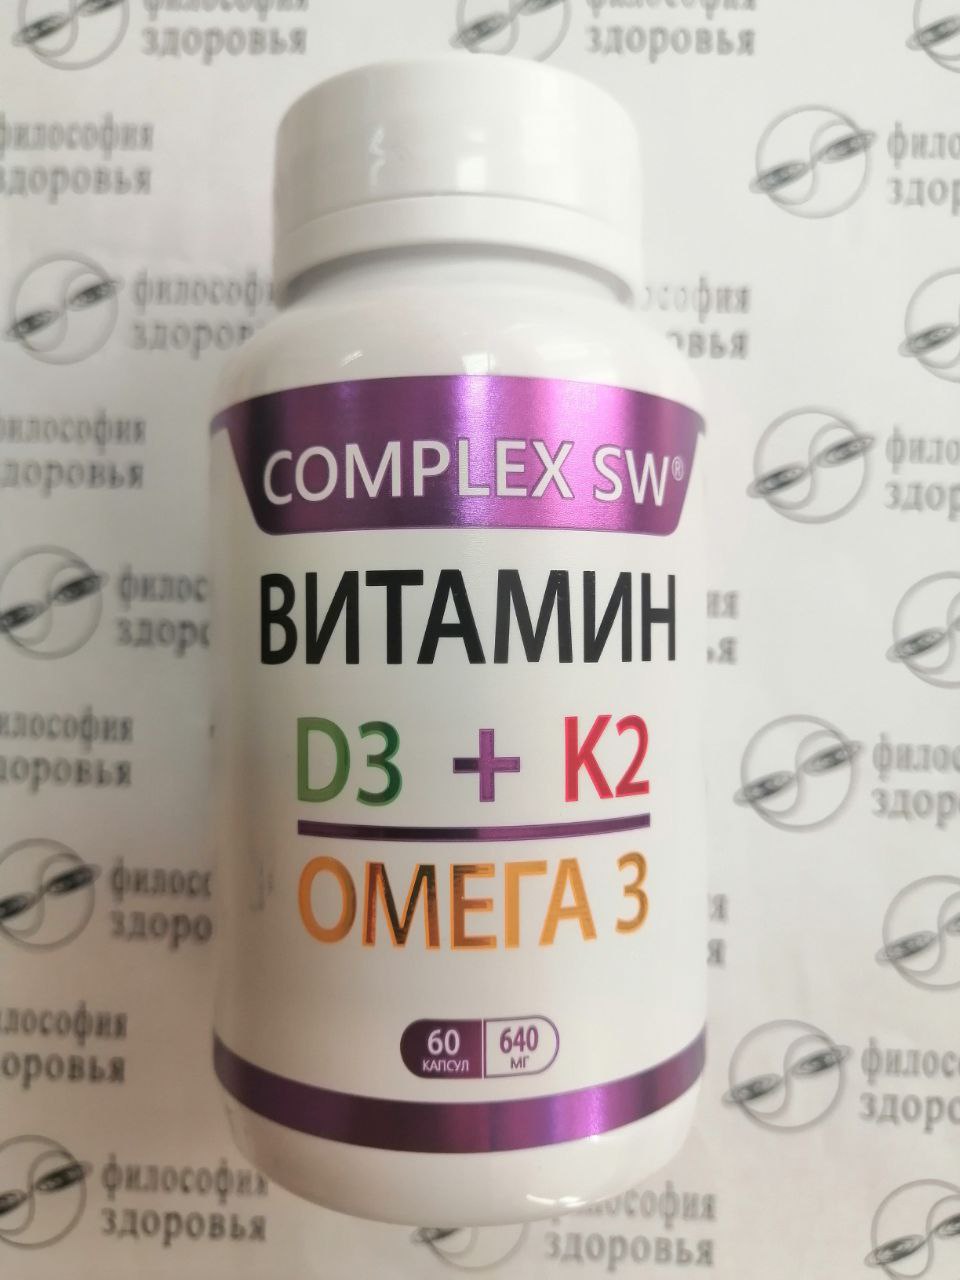 Витамины D3, K2 и Омега-3 SW Оптисалт - лицевая сторона упаковки